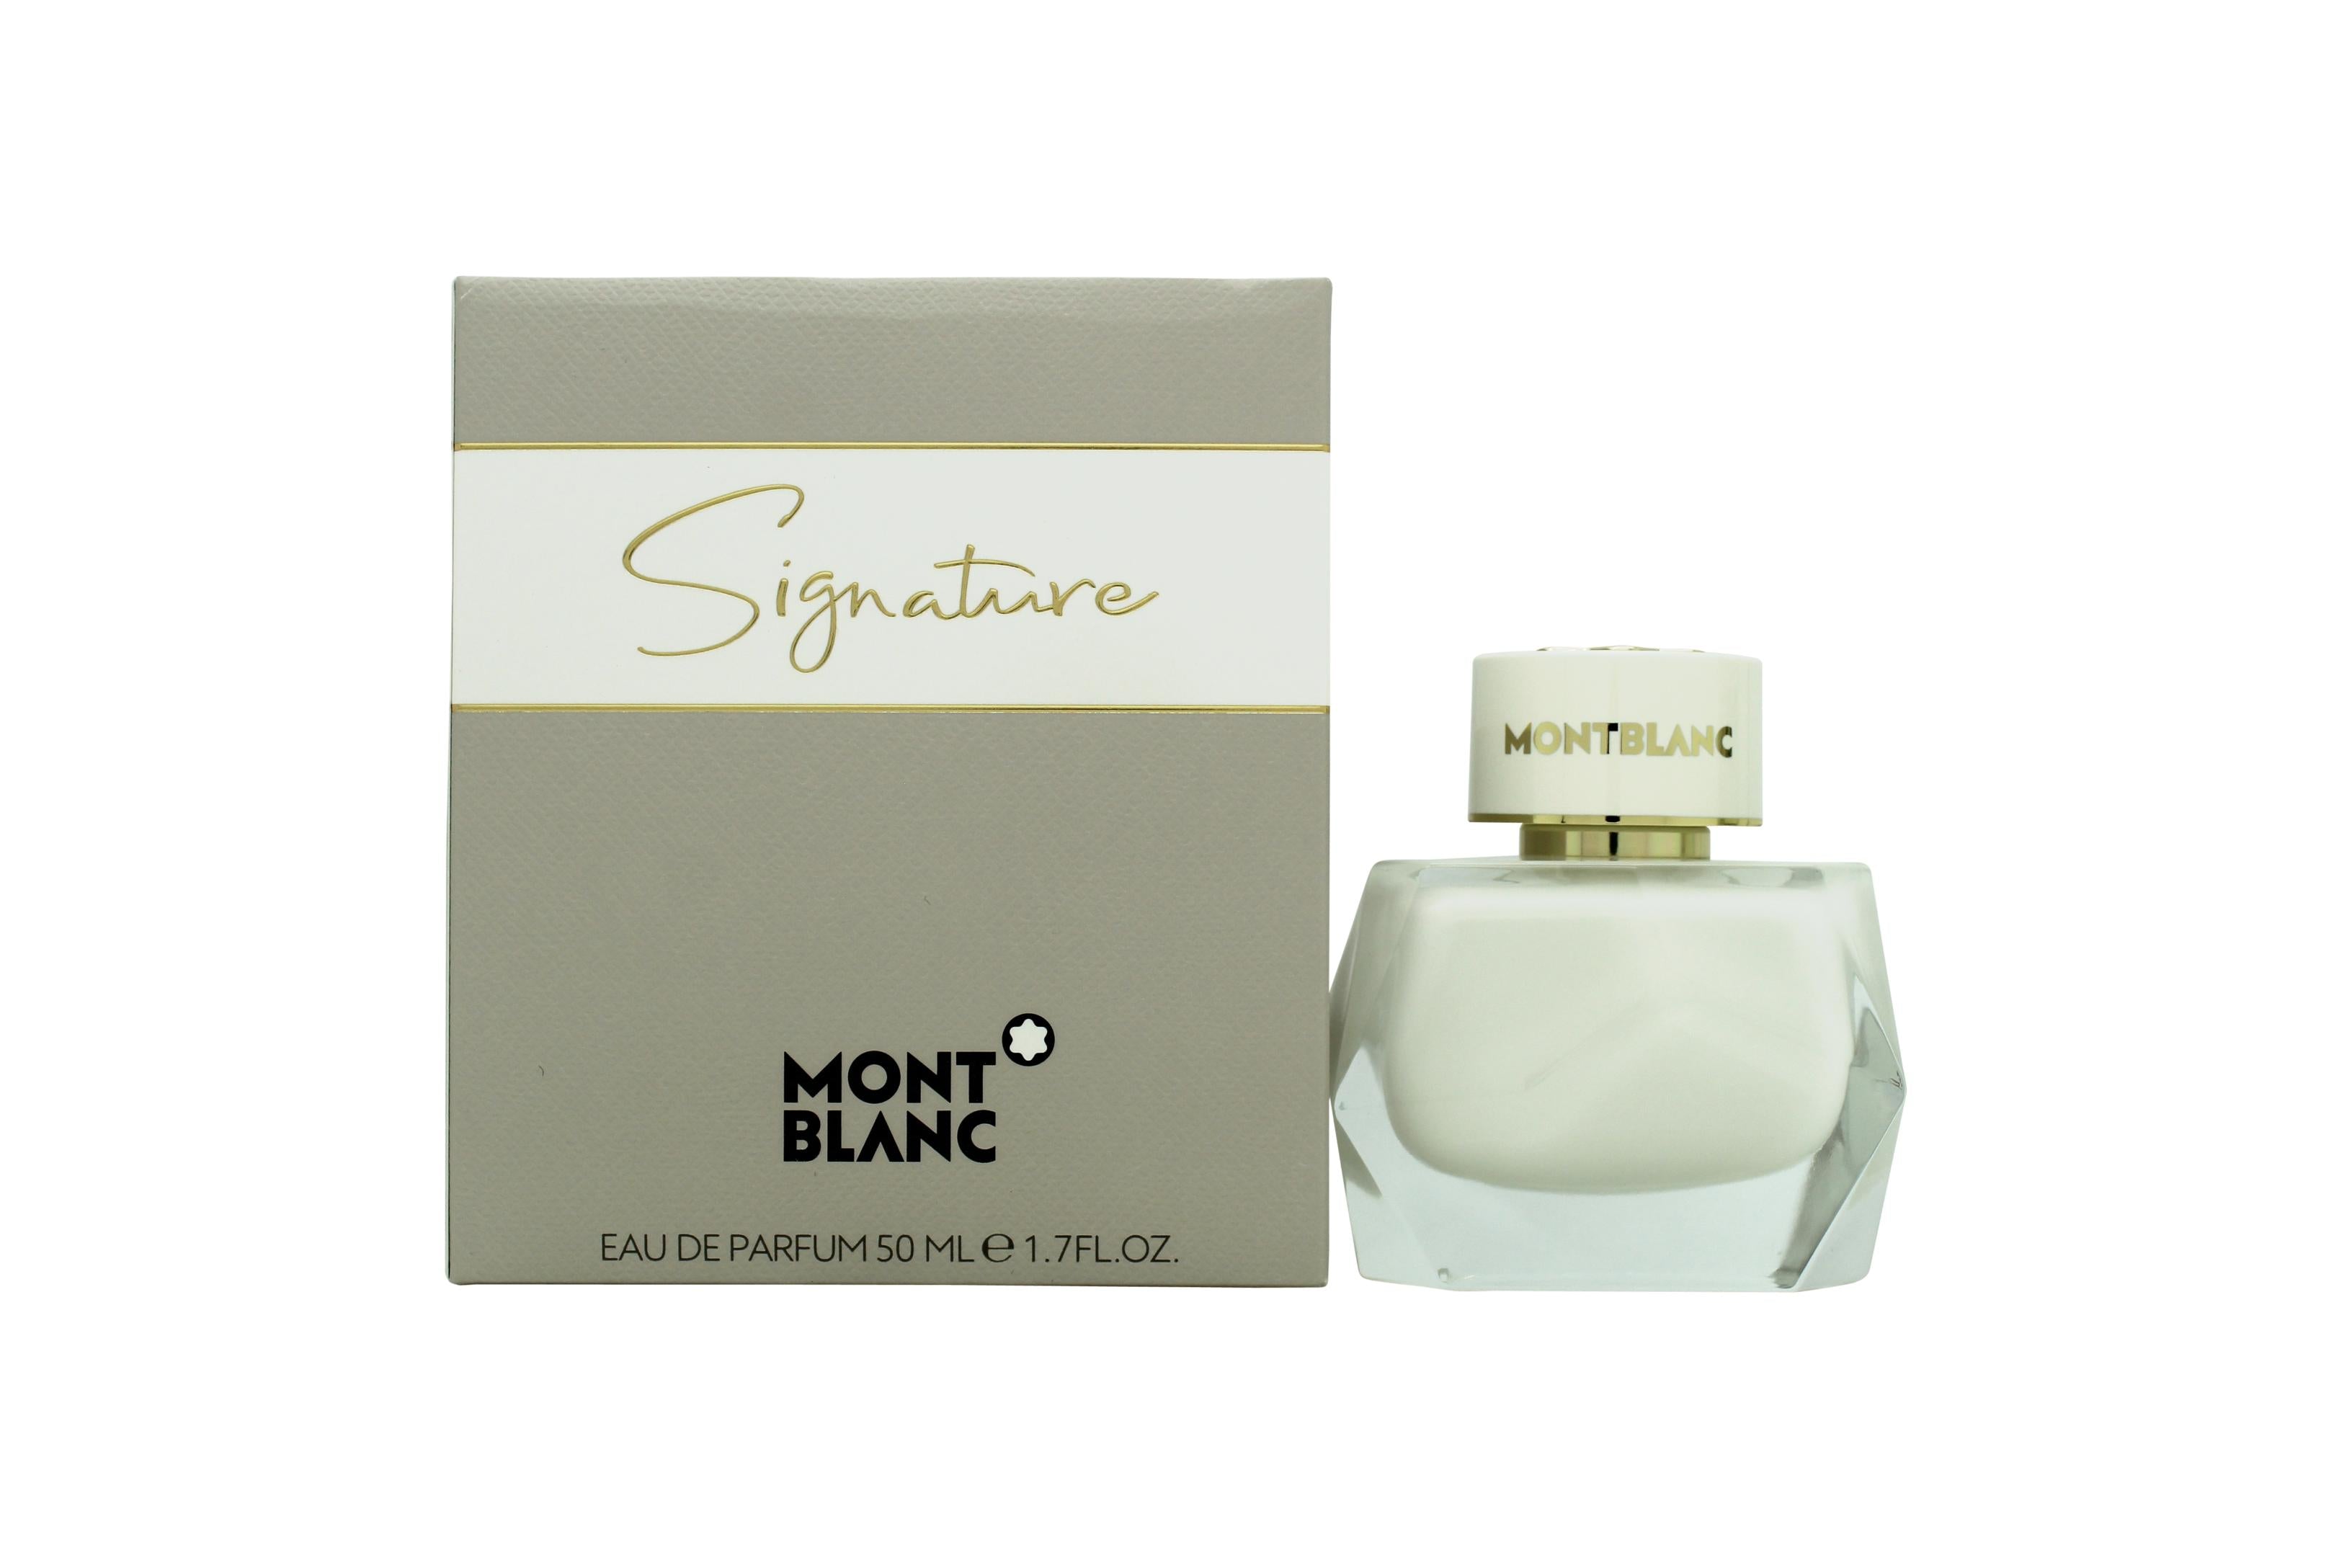 View Mont Blanc Signature Eau de Parfum 50ml Spray information